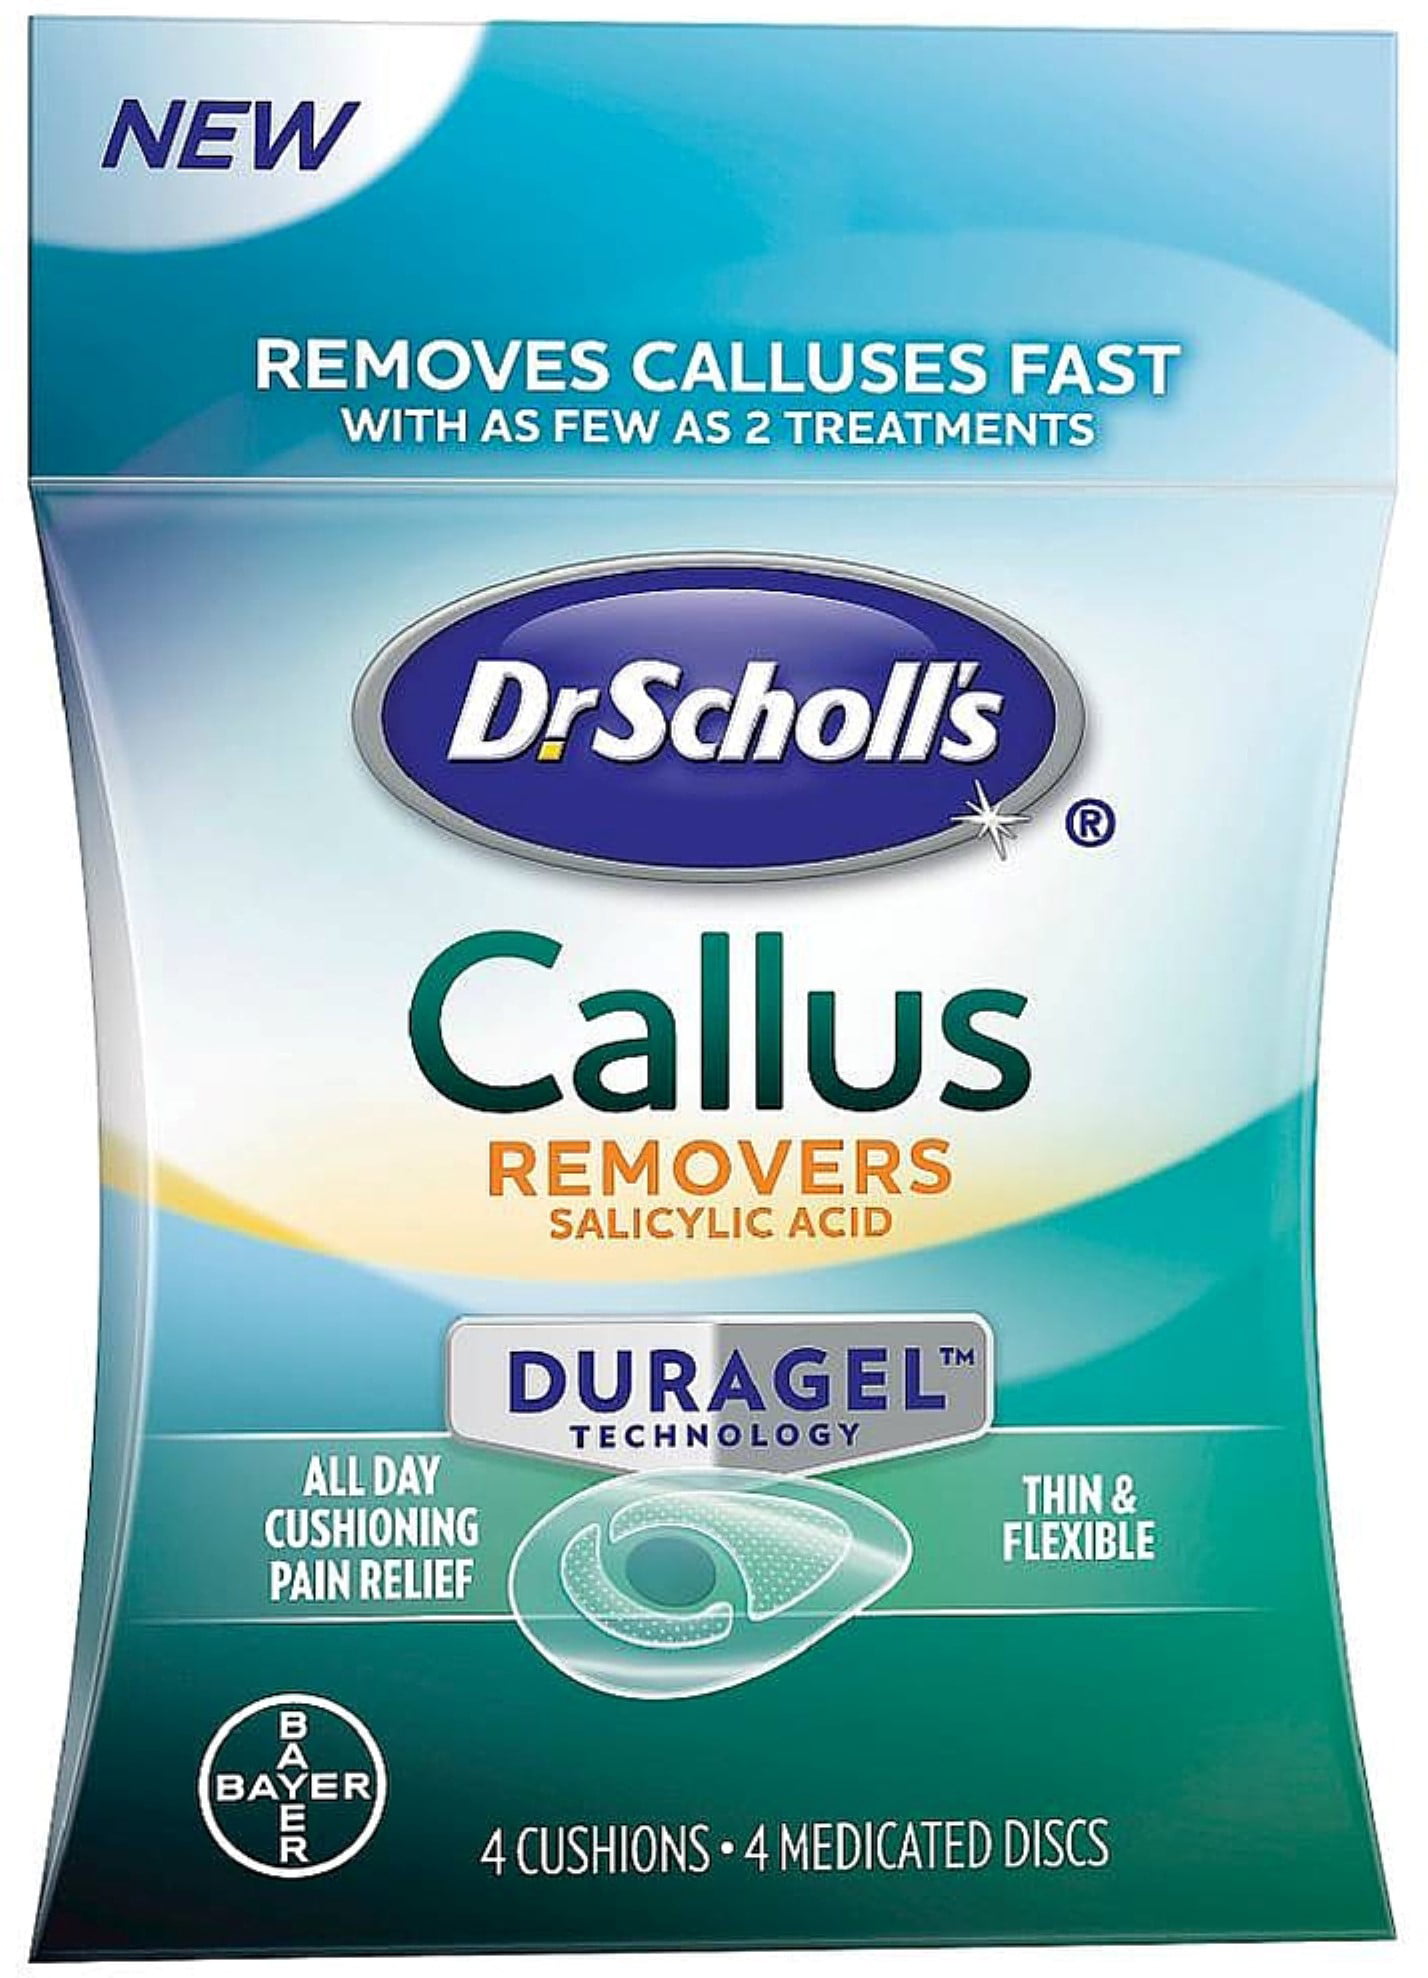 dr scholl's callus remover duragel